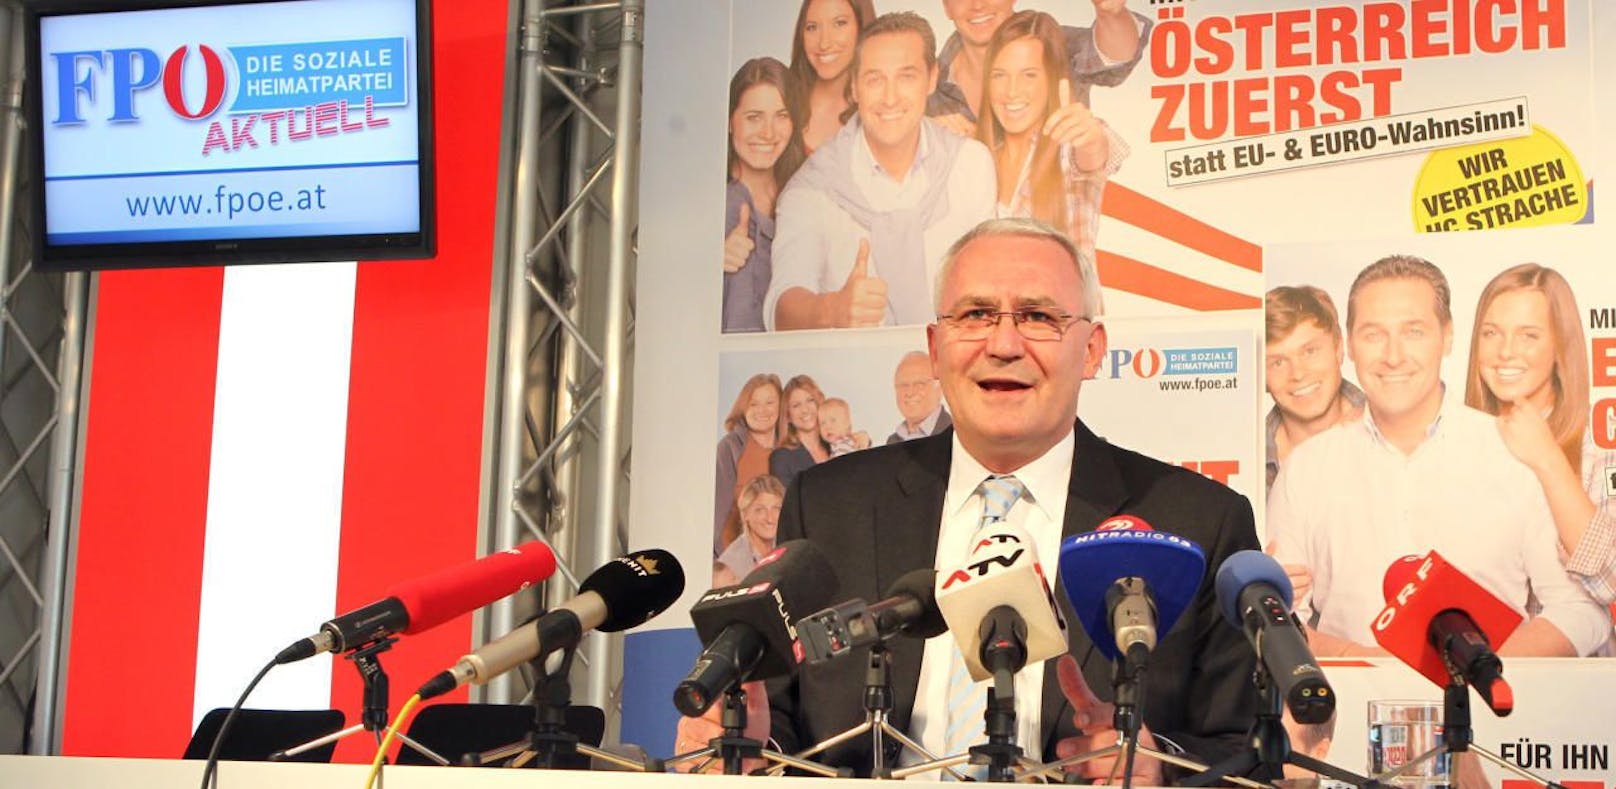 Martin Graf 2013 bei der Pressekonferenz, bei der er seinen Rücktritt erklärt hatte.